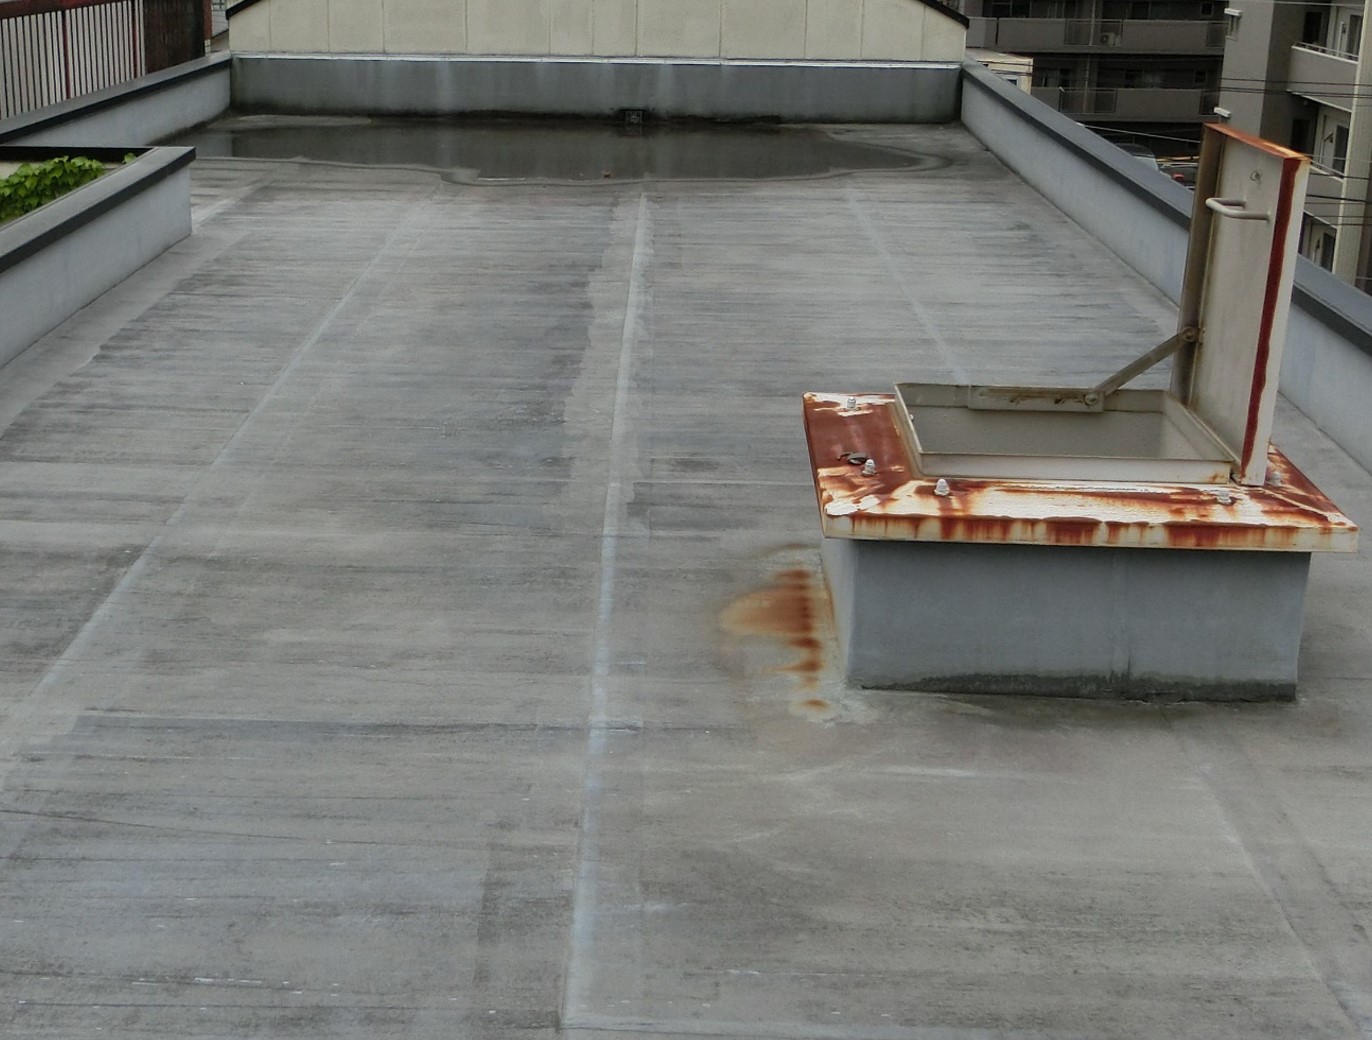 無料の雨漏り建物調査／名古屋市中村区のマンション屋上の防水を調査しに行ってきました